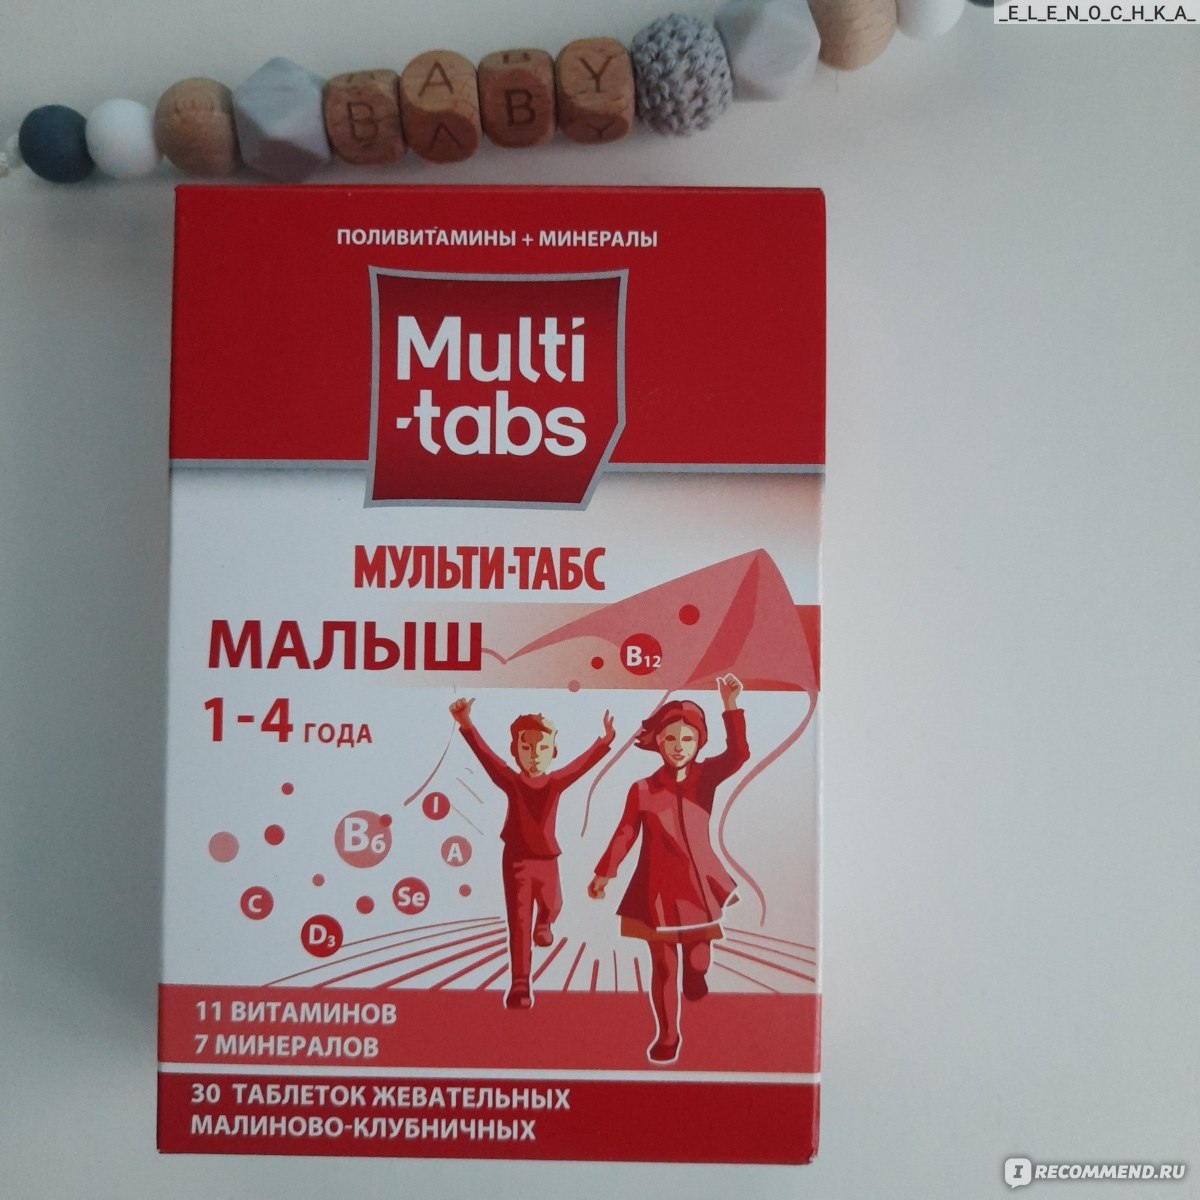 Витамины Multi-tabs Мульти-табс малыш 1 - 4 года - «Как в 